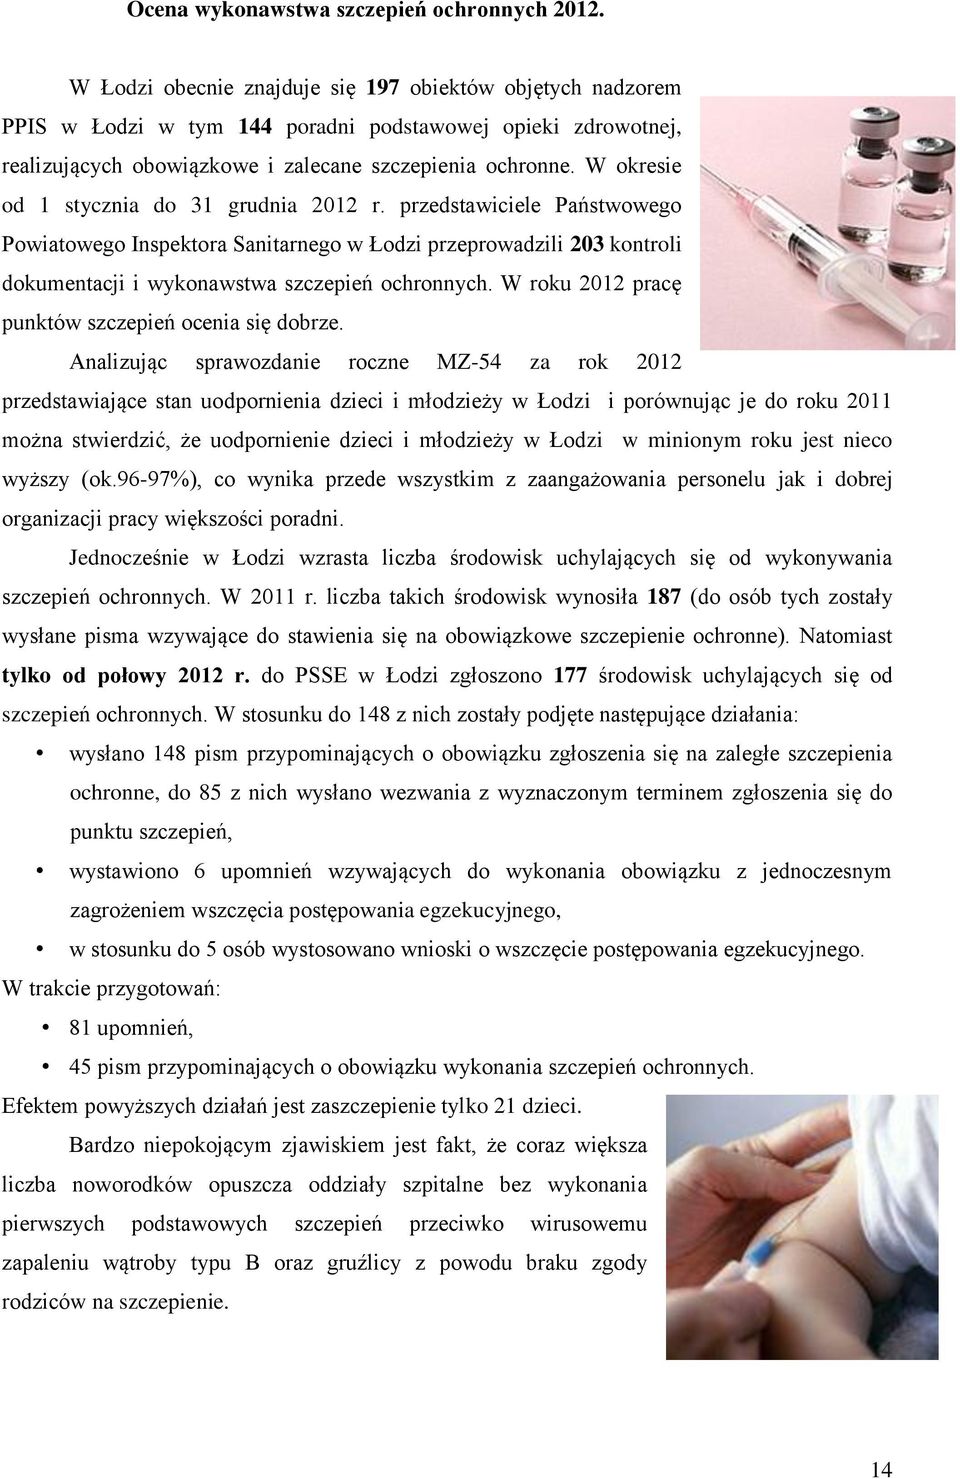 W okresie od 1 stycznia do 31 grudnia 2012 r. przedstawiciele Państwowego Powiatowego Inspektora Sanitarnego w Łodzi przeprowadzili 203 kontroli dokumentacji i wykonawstwa szczepień ochronnych.